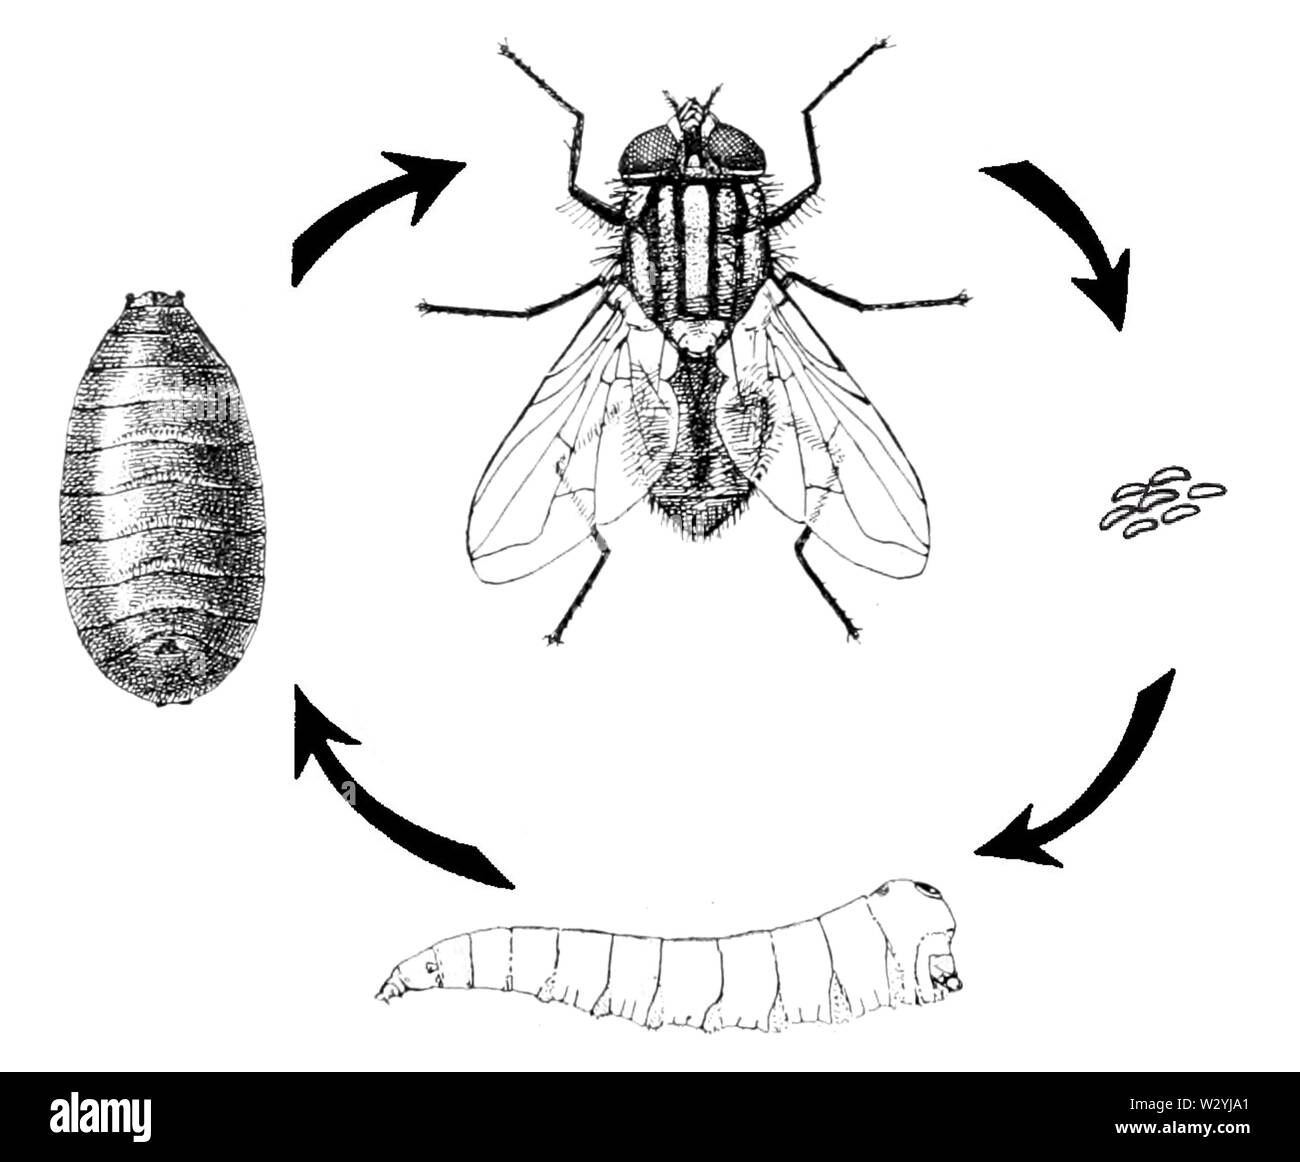 Домашняя муха развитие. Musca domestica жизненный цикл. Цикл развития комнатной мухи. Musca domestica комнатная Муха. Осенняя жигалка жизненный цикл.